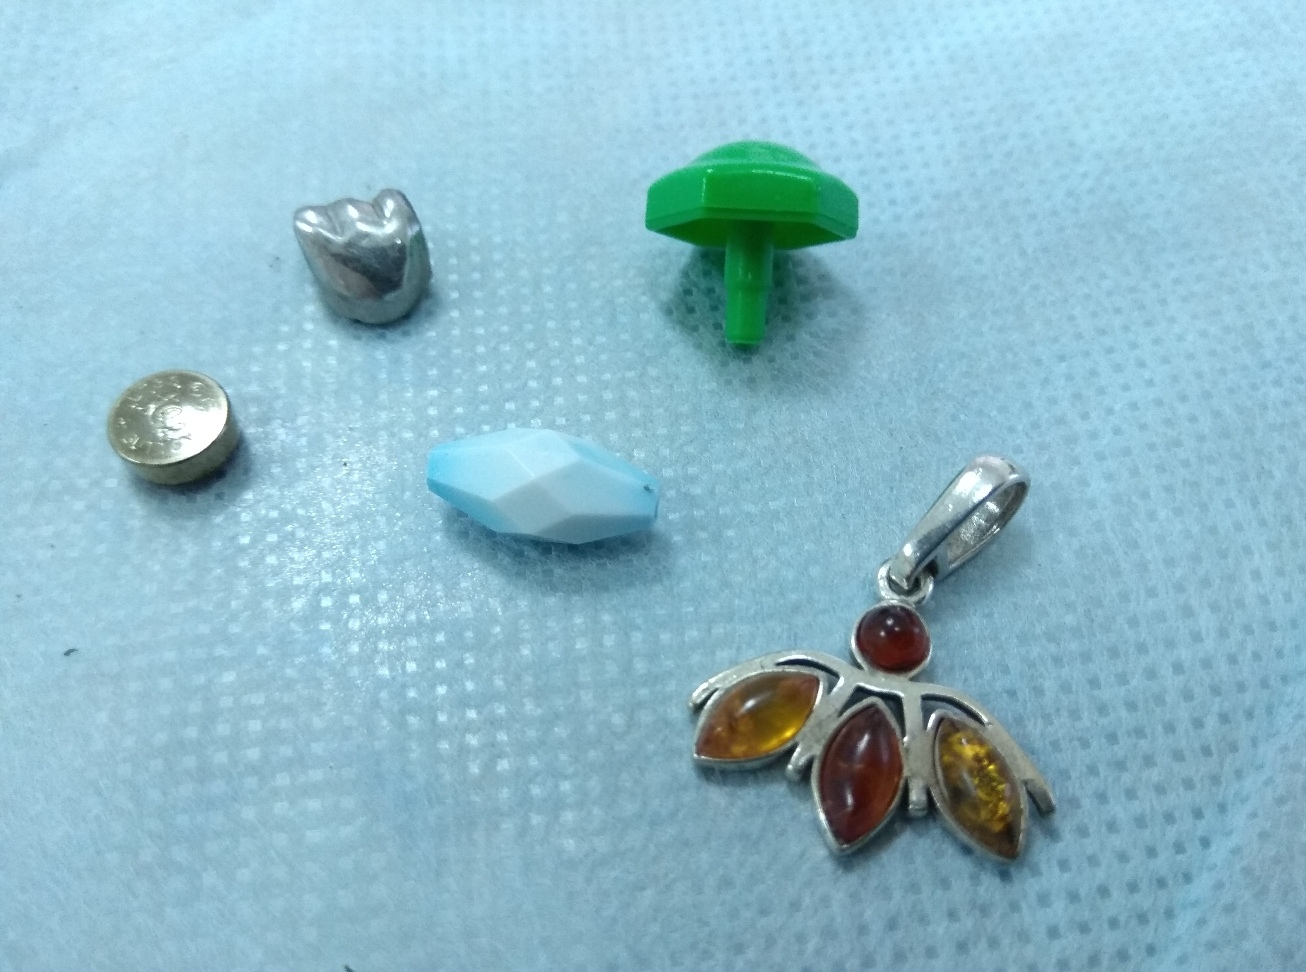 Вот какие инородные предметы врачам приходилось доставать: тут пуговицы, кулончик и другие мелкие детали